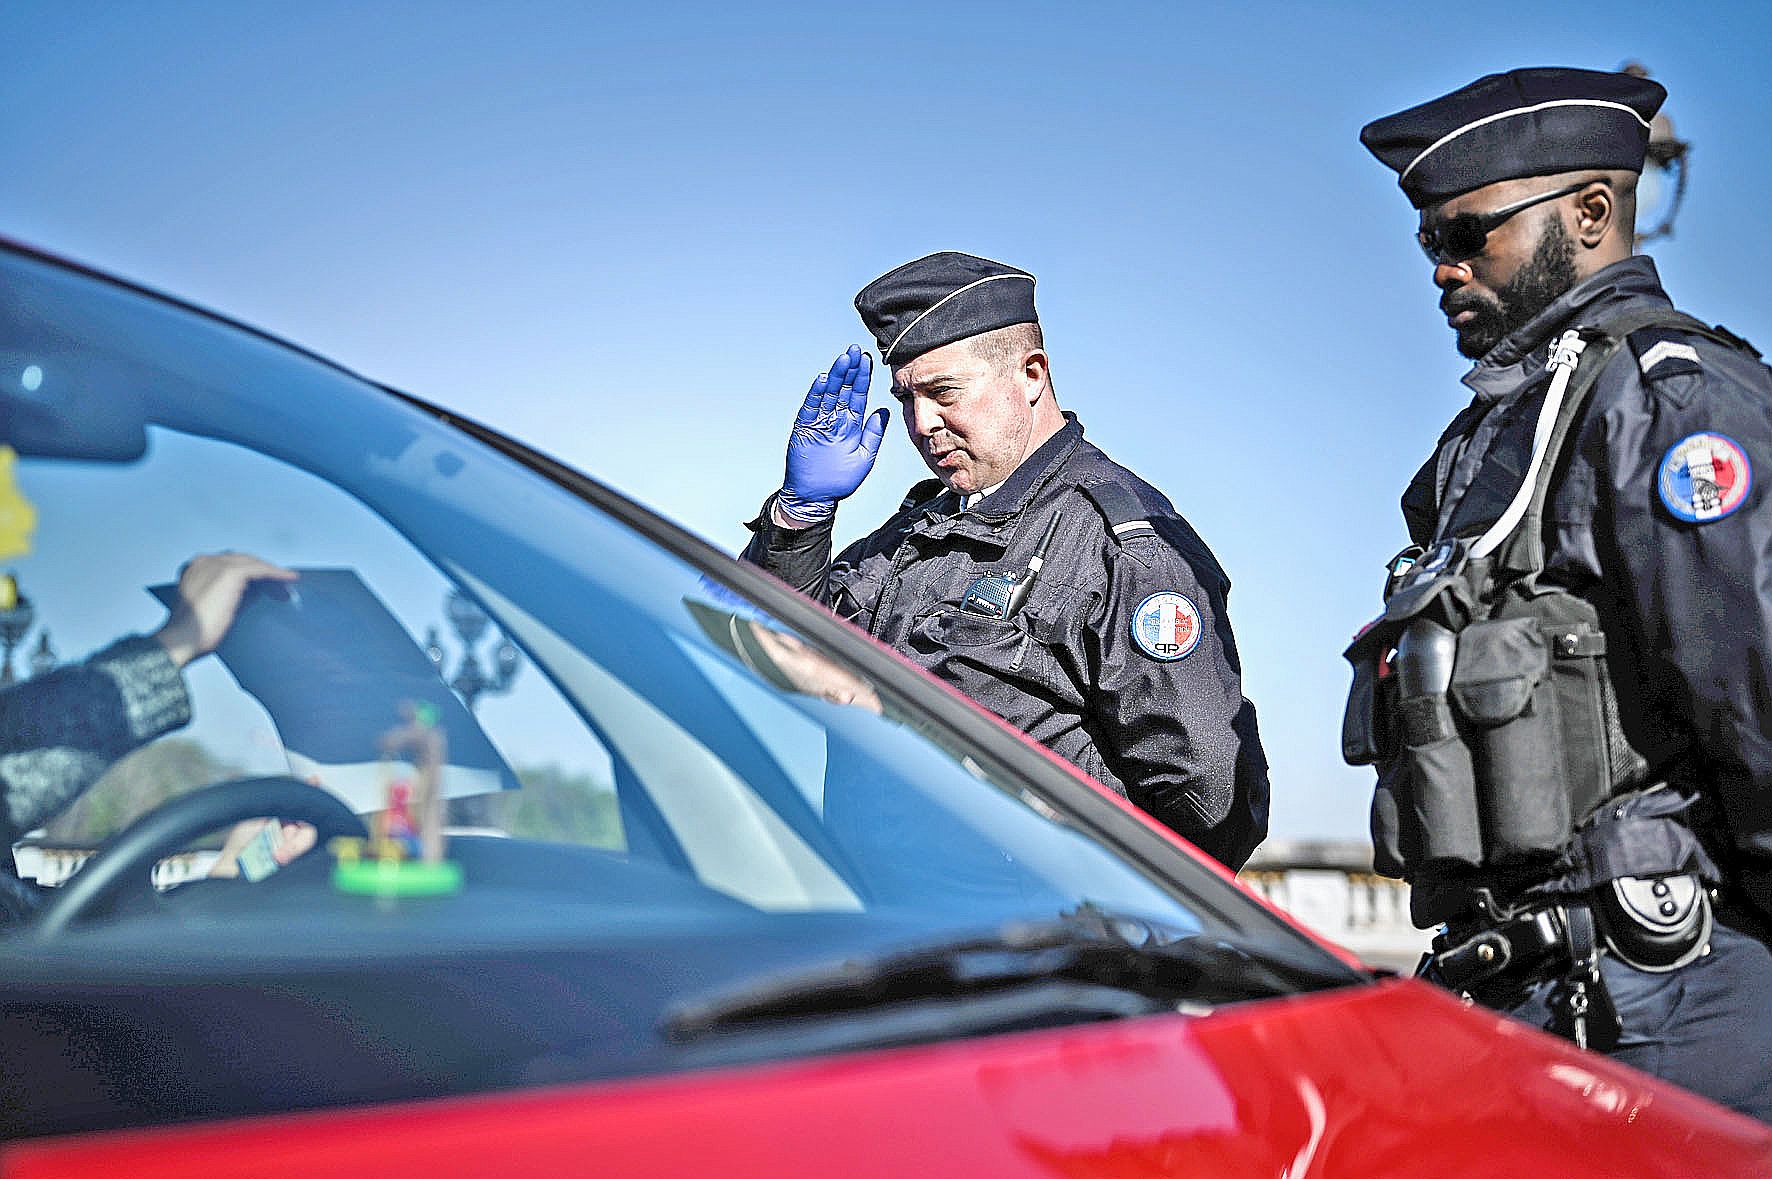 Les restrictions de circulation ont freiné, pour un temps estime la police, certaines activités criminelles. Photo AFP